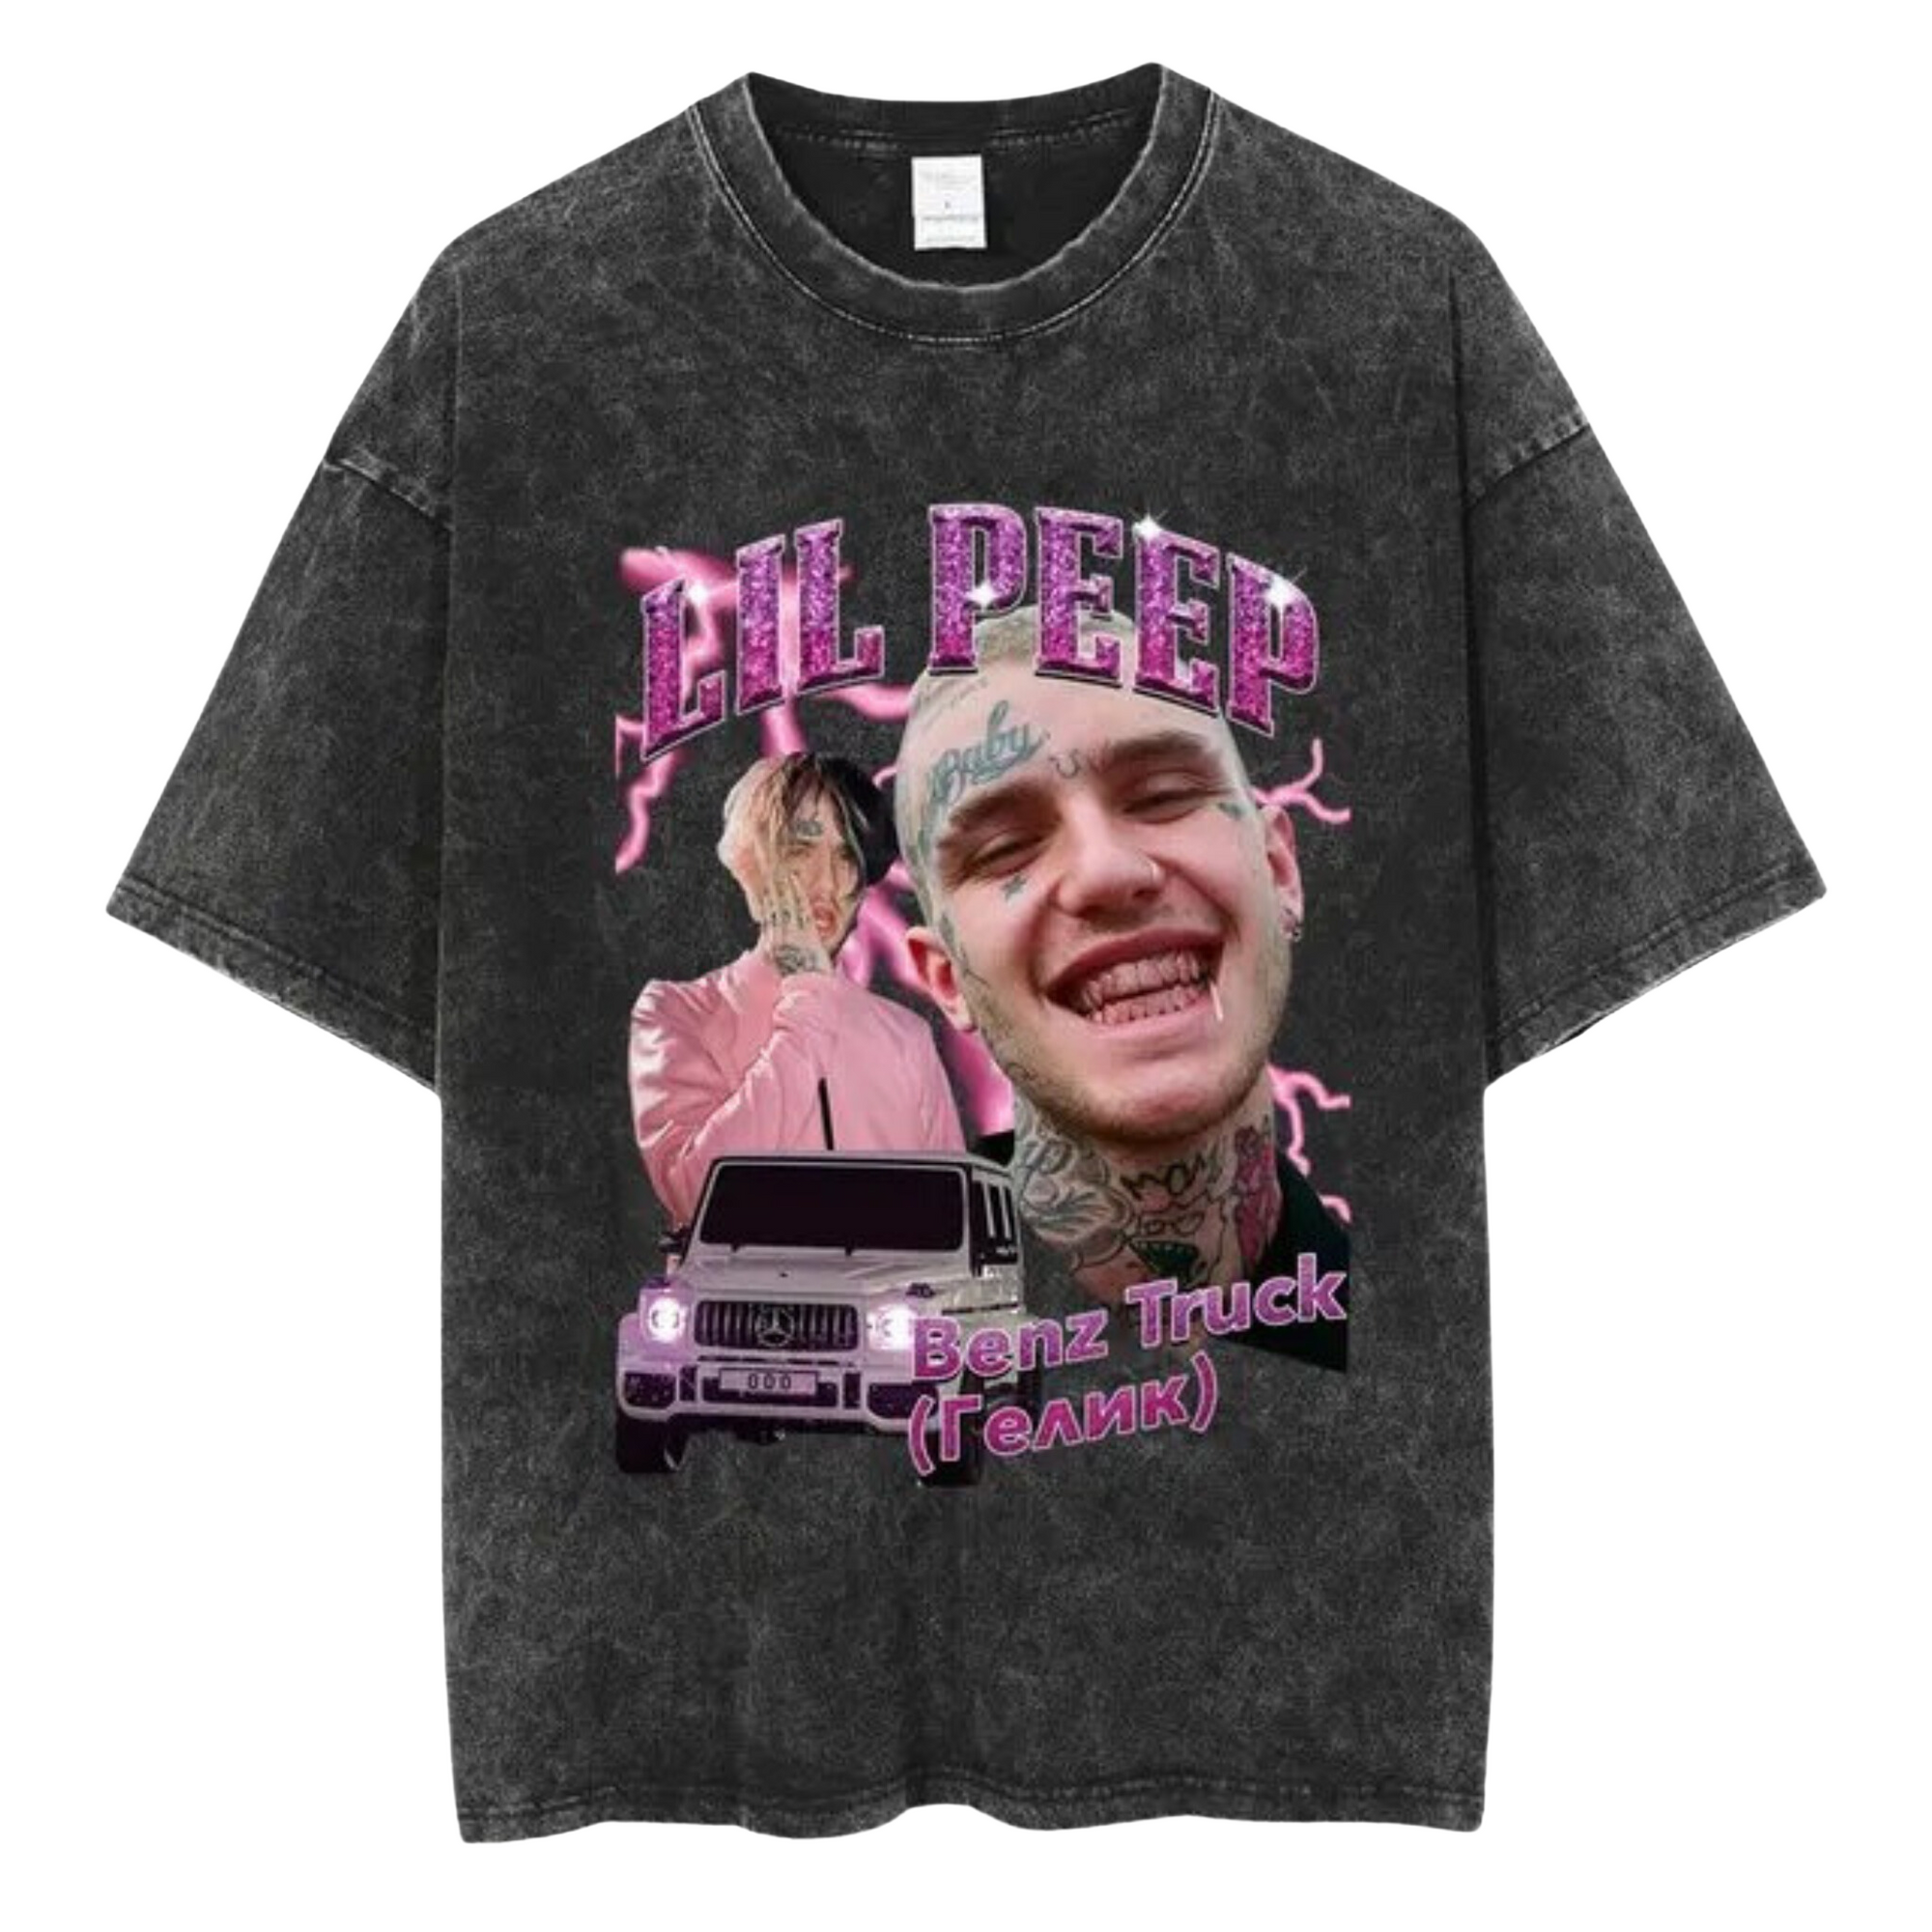 Camiseta Lil Peep